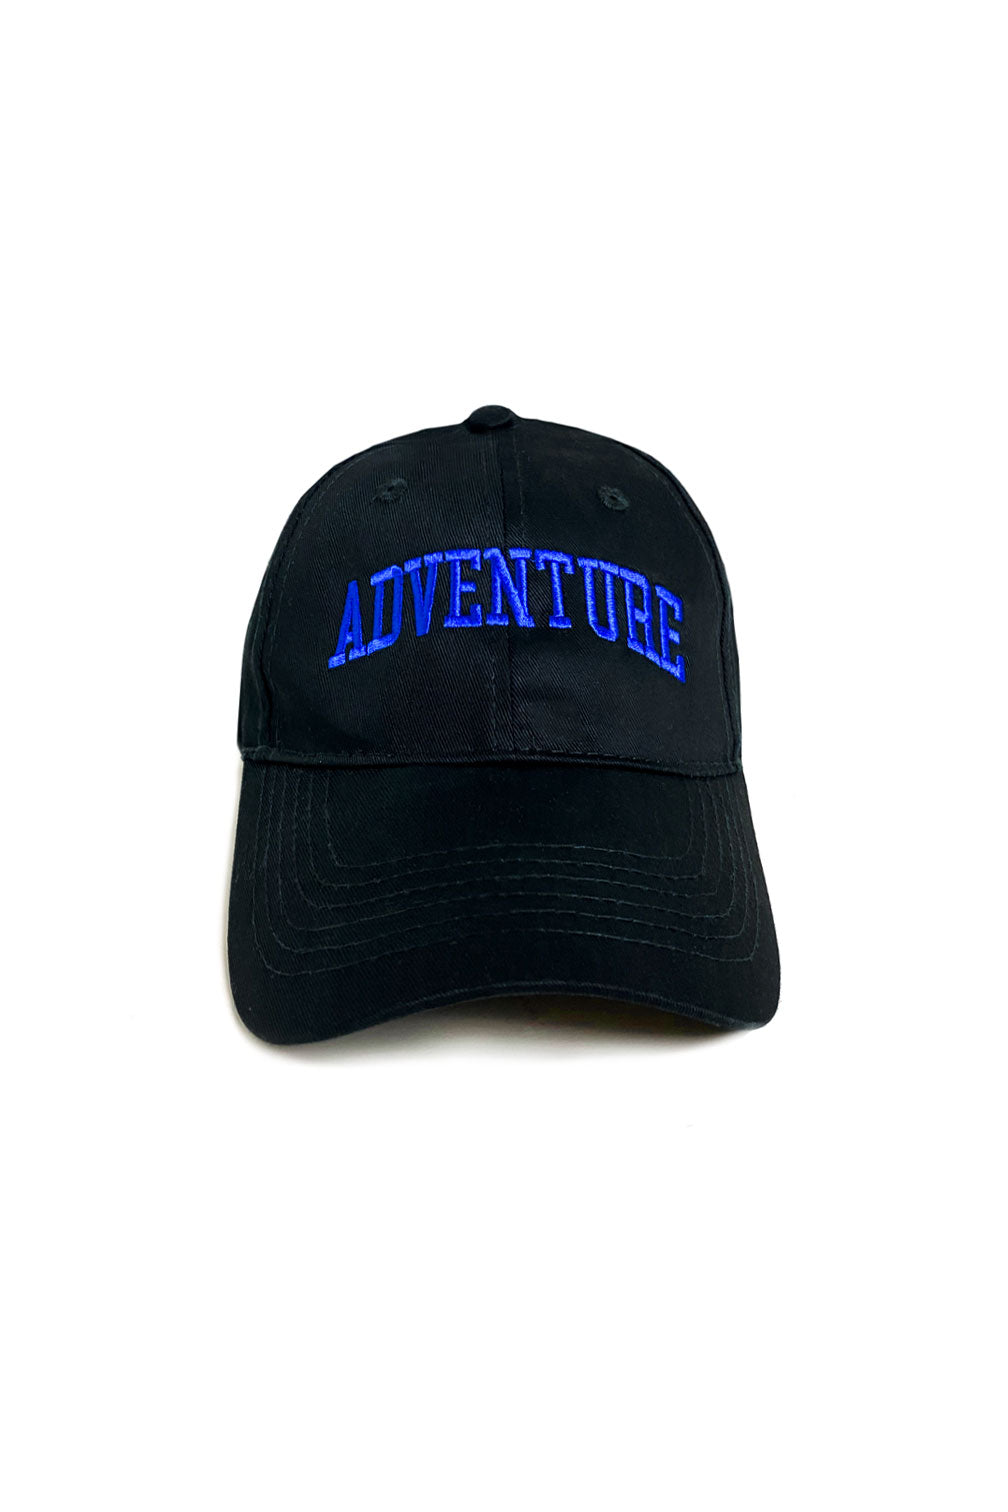 Adventure cap